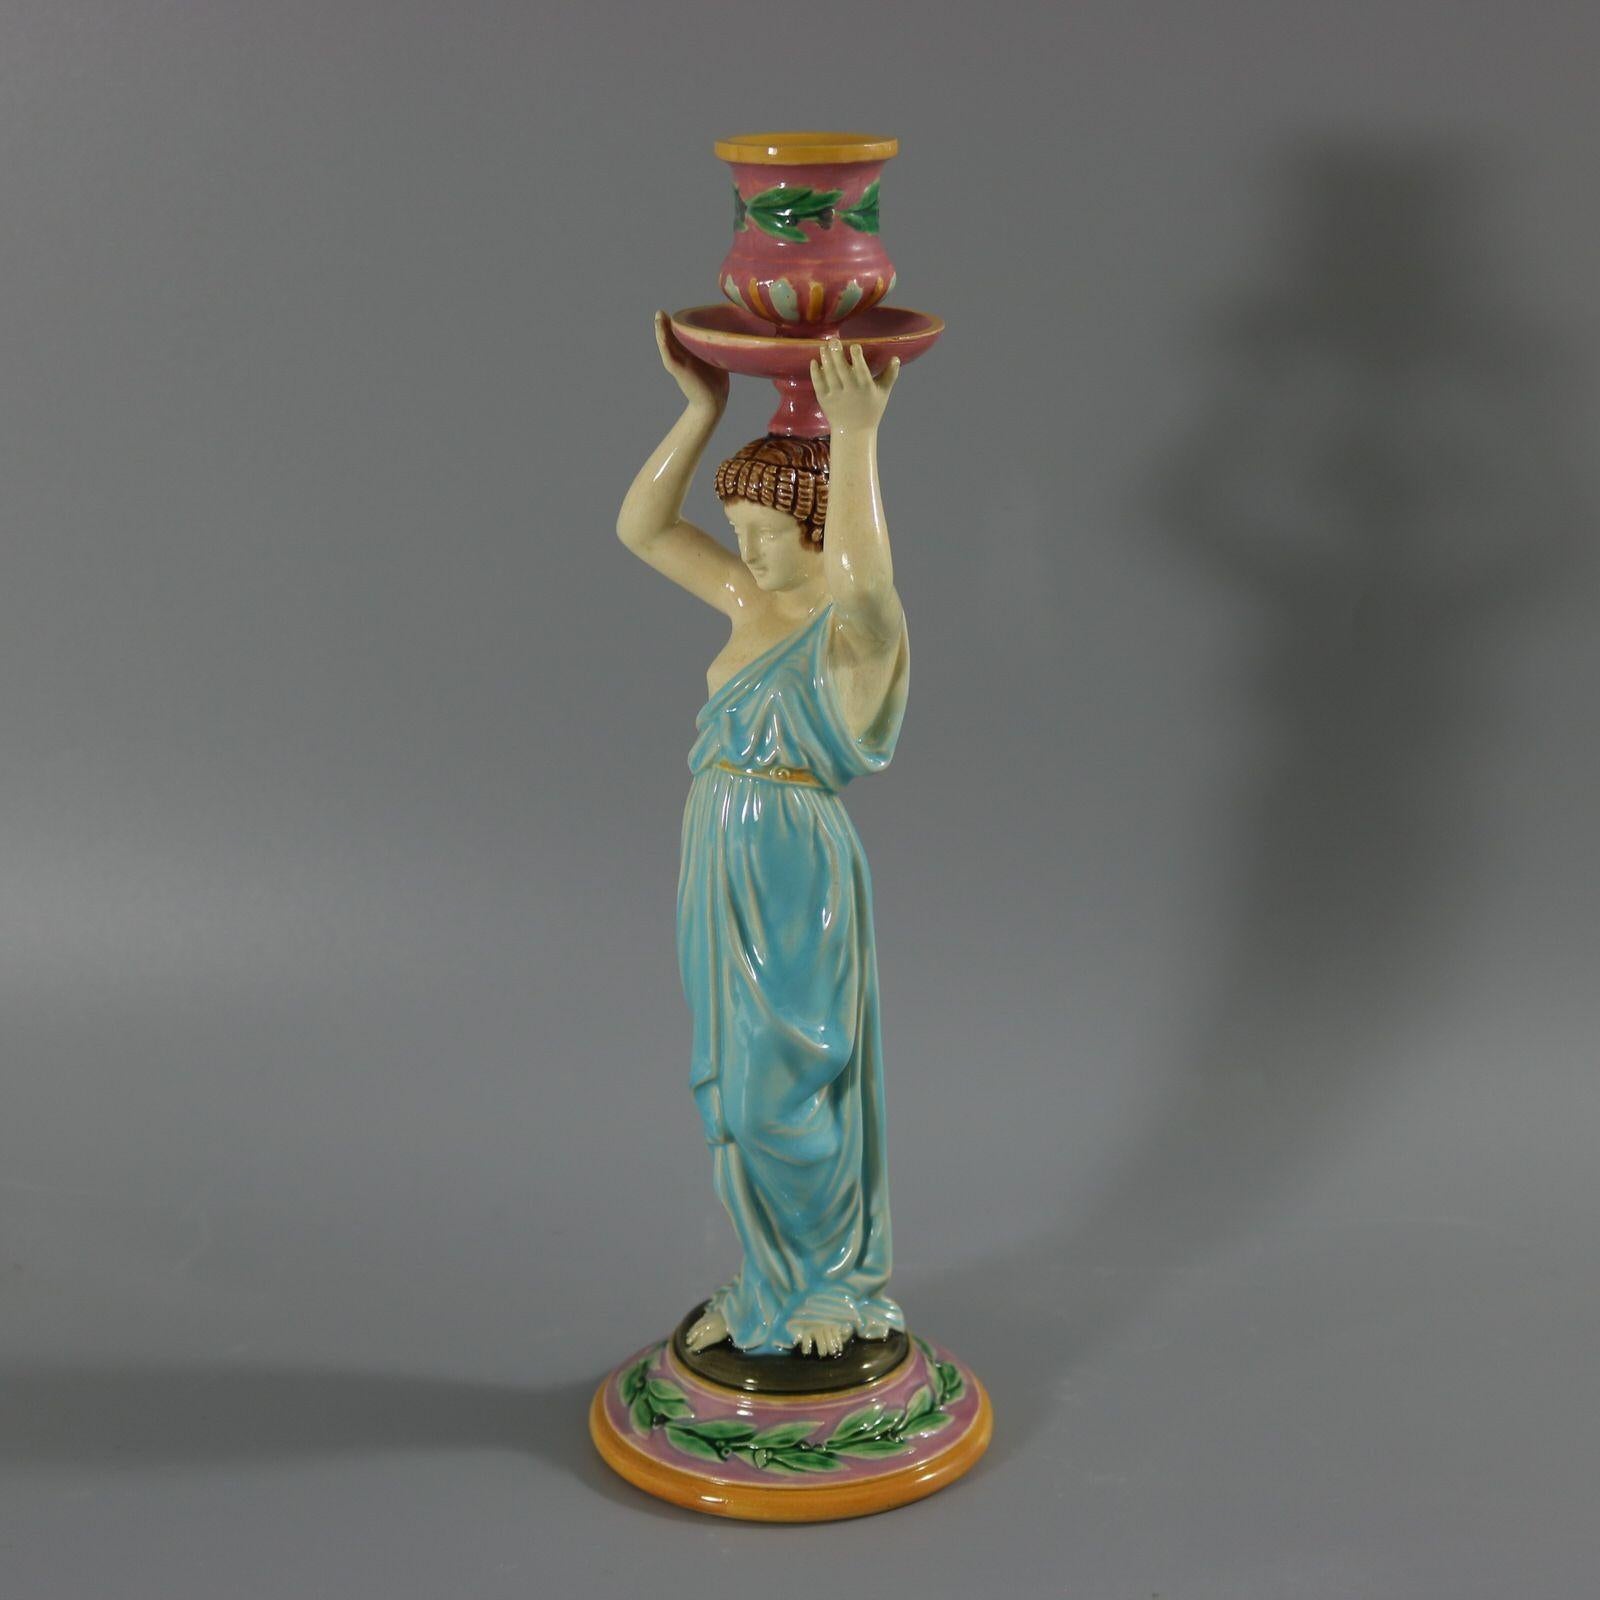 George Jones Majolika-Kerzenständer mit einer Dame in klassischem, fließendem Gewand, die den Kerzenleuchter über ihrem Kopf hält. Dieses Stück ist eines der wenigen Werke von George Jones, die vom alten Ägypten und den Ägyptern inspiriert sind.